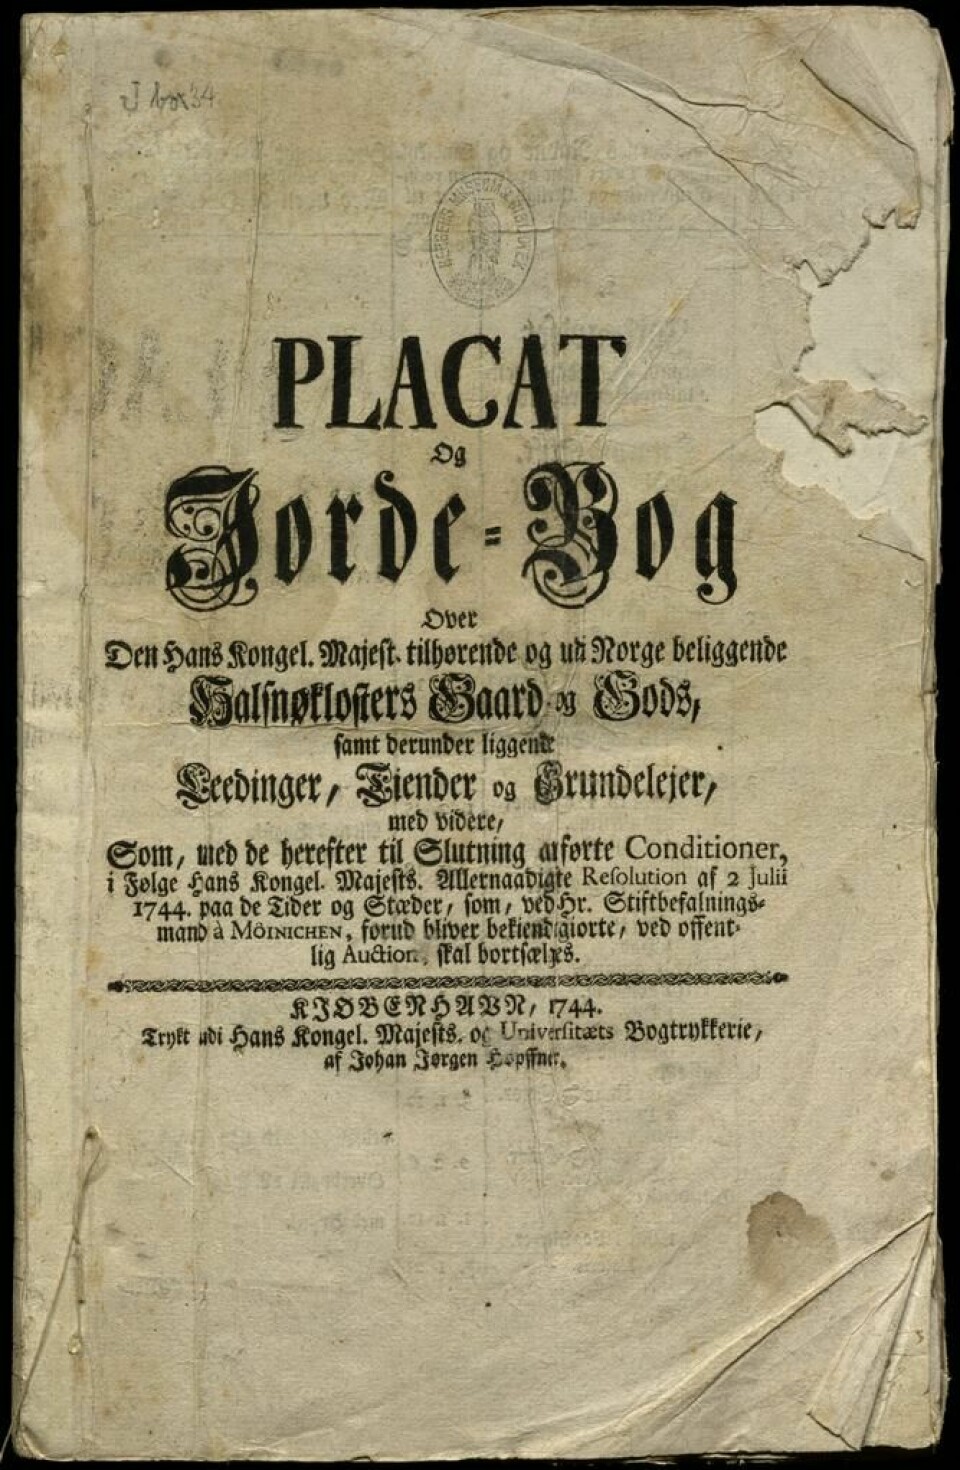 Placat og Jorde-Bog datert 1744. København.